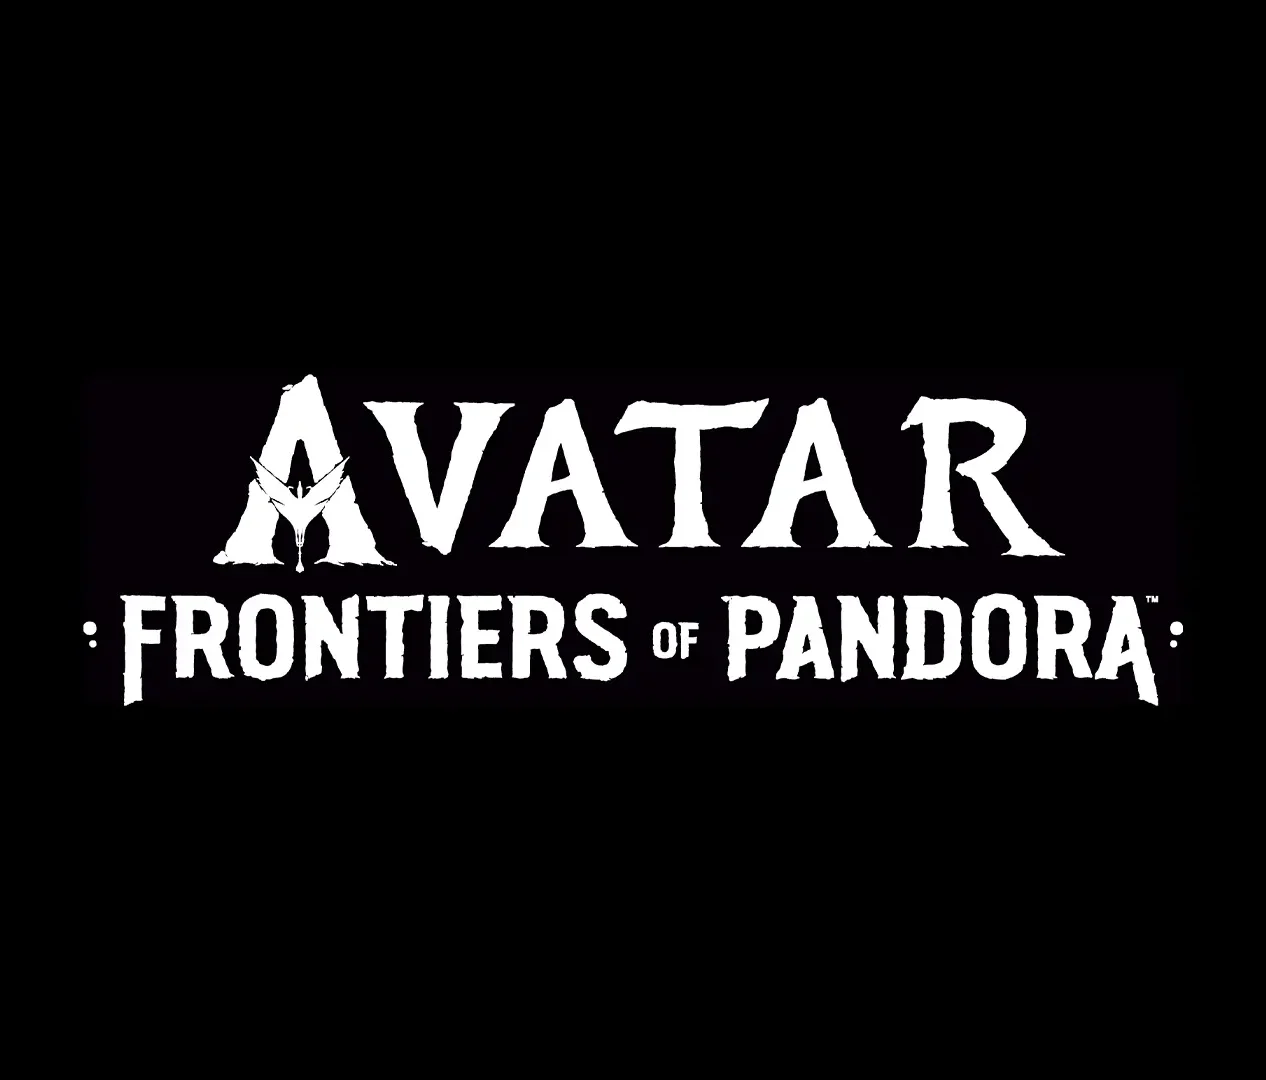 Trofeos de Avatar: Frontiers of Pandora